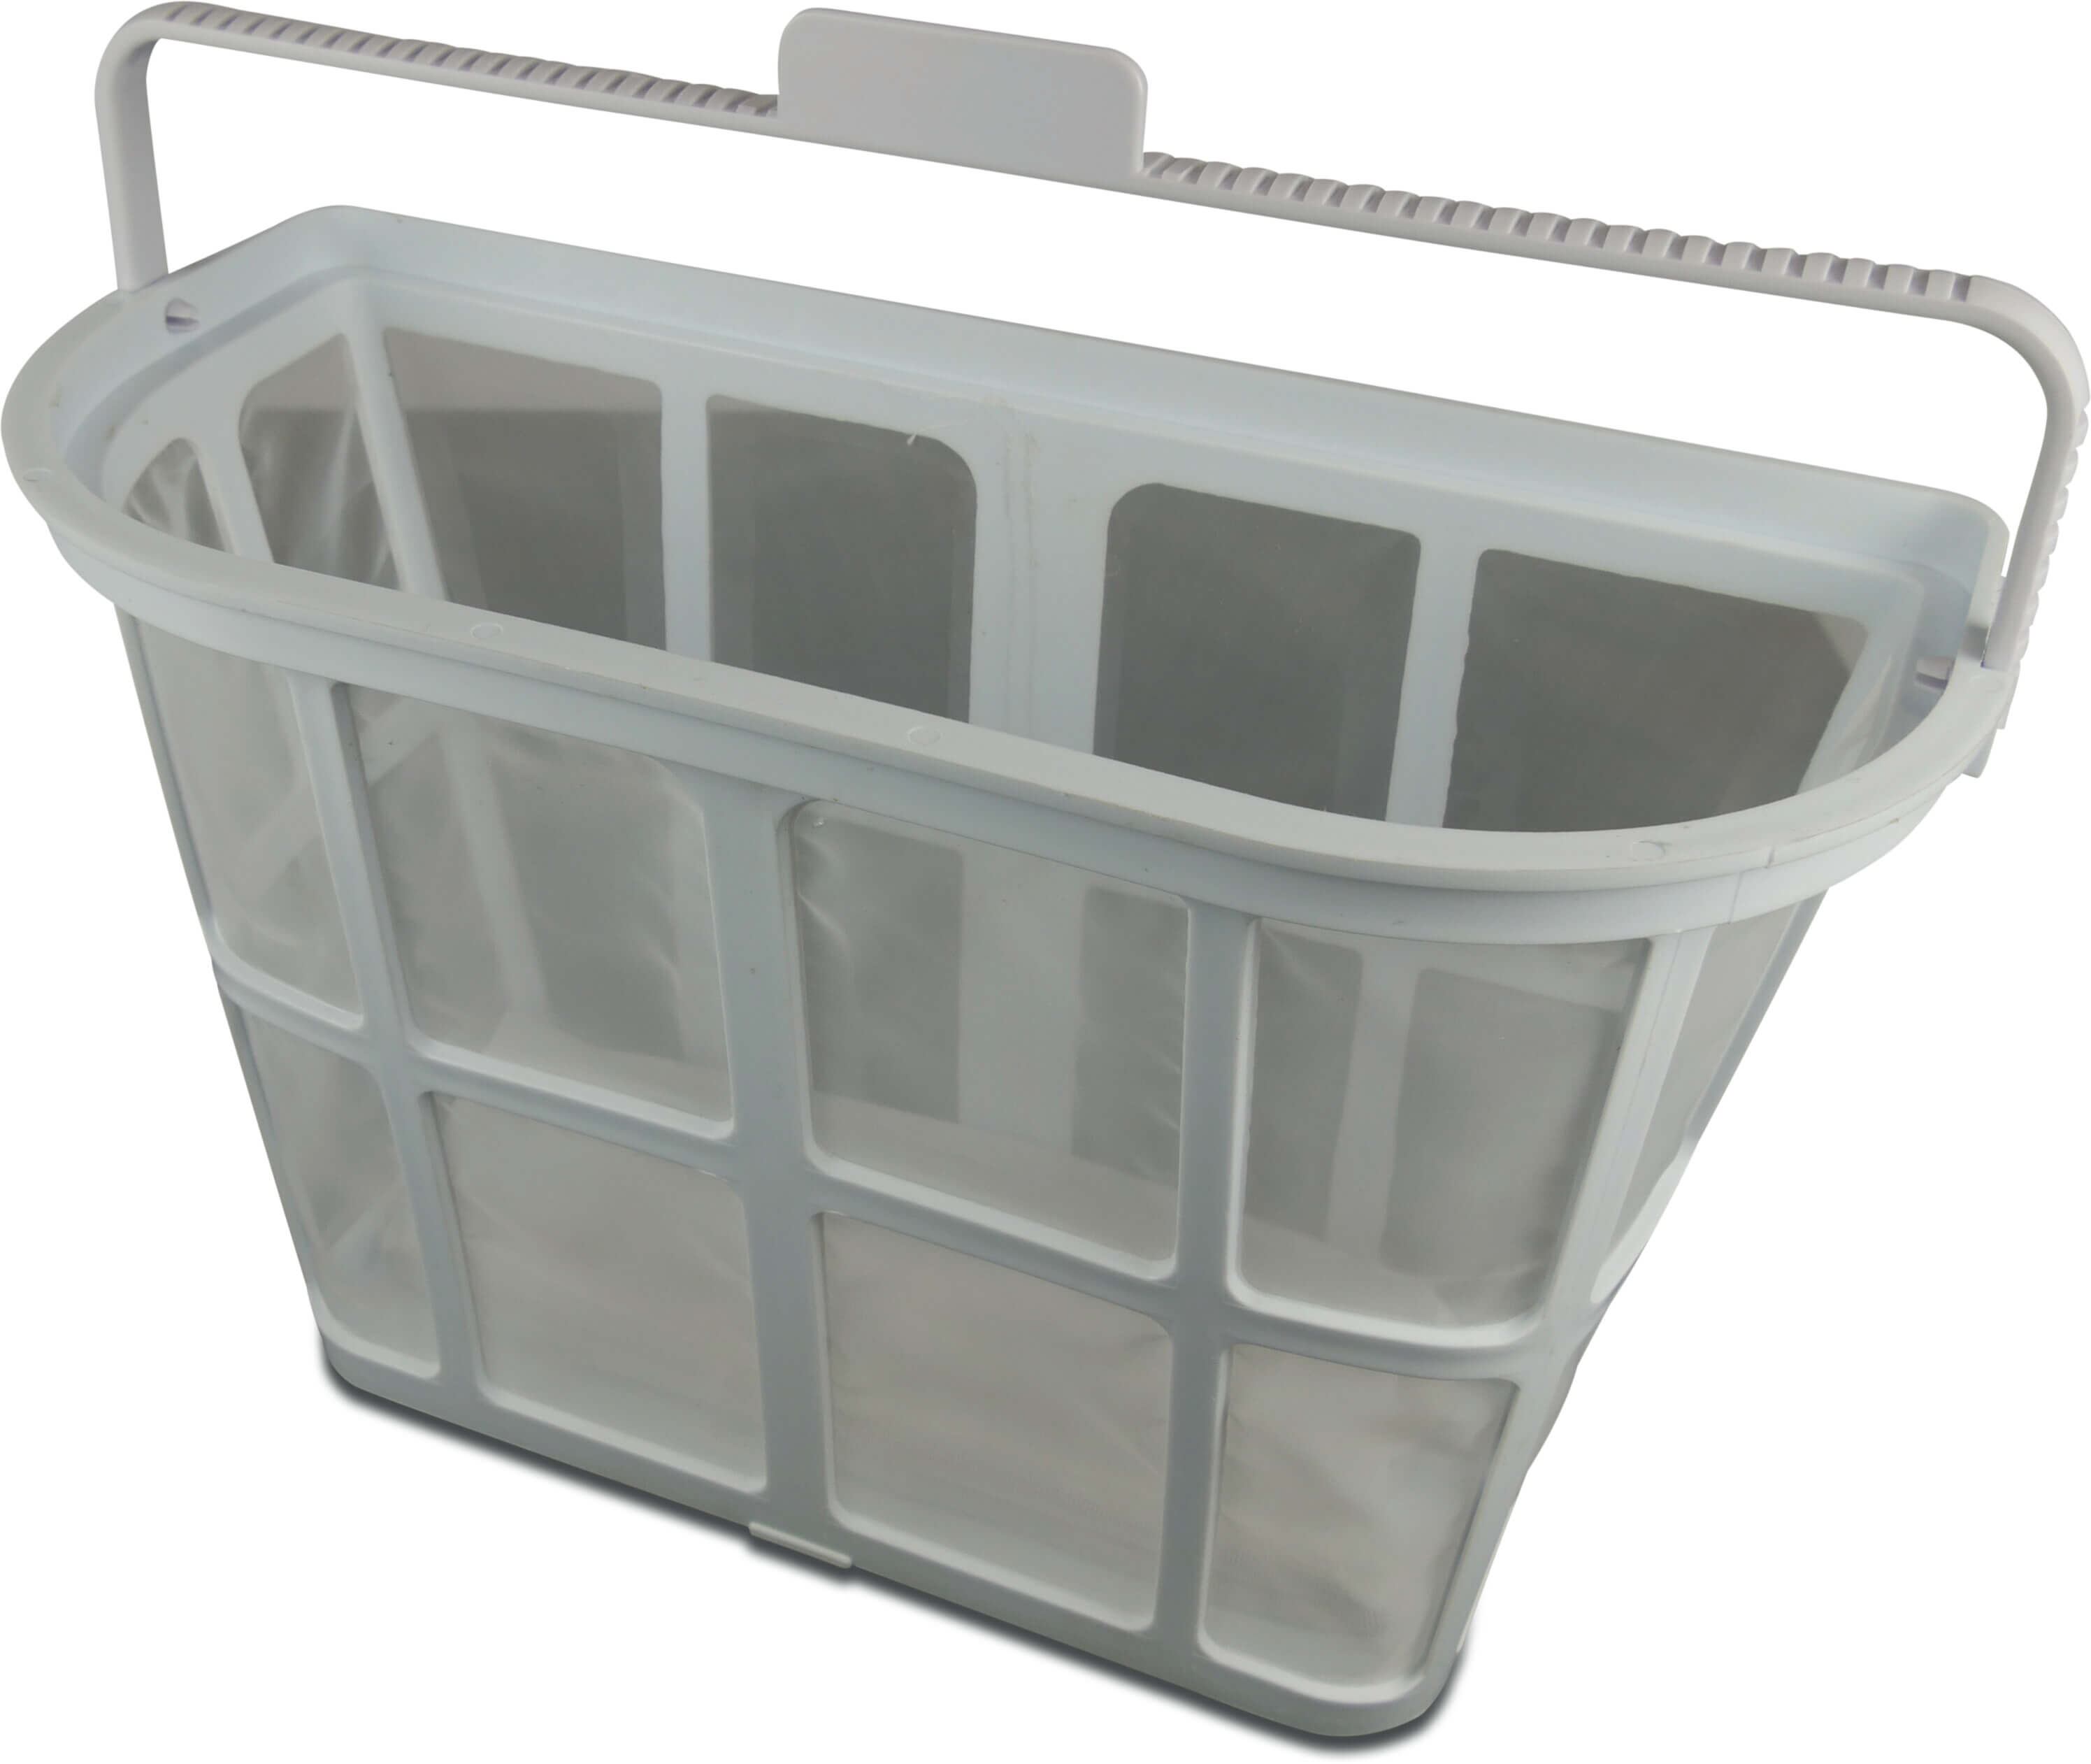 Filter basket holder white for Flotide pool cleaner XR2/CIPU